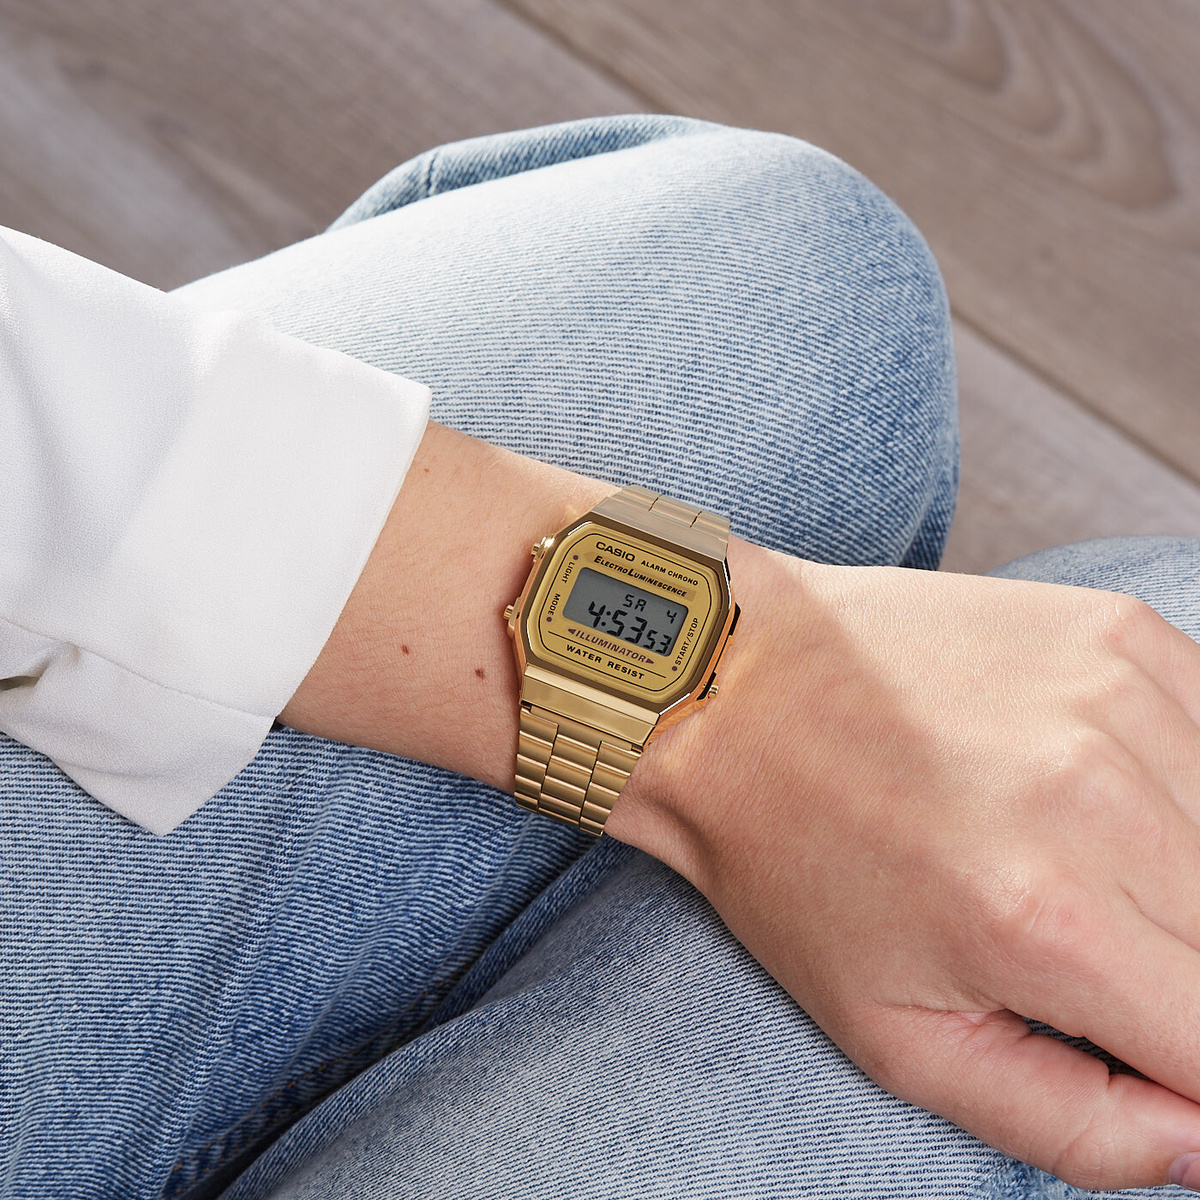 Японские наручные часы A-168WG-9ER из коллекции Casio Retro отражают собой стильную лаконичность в сочетании со спортивным оформлением.